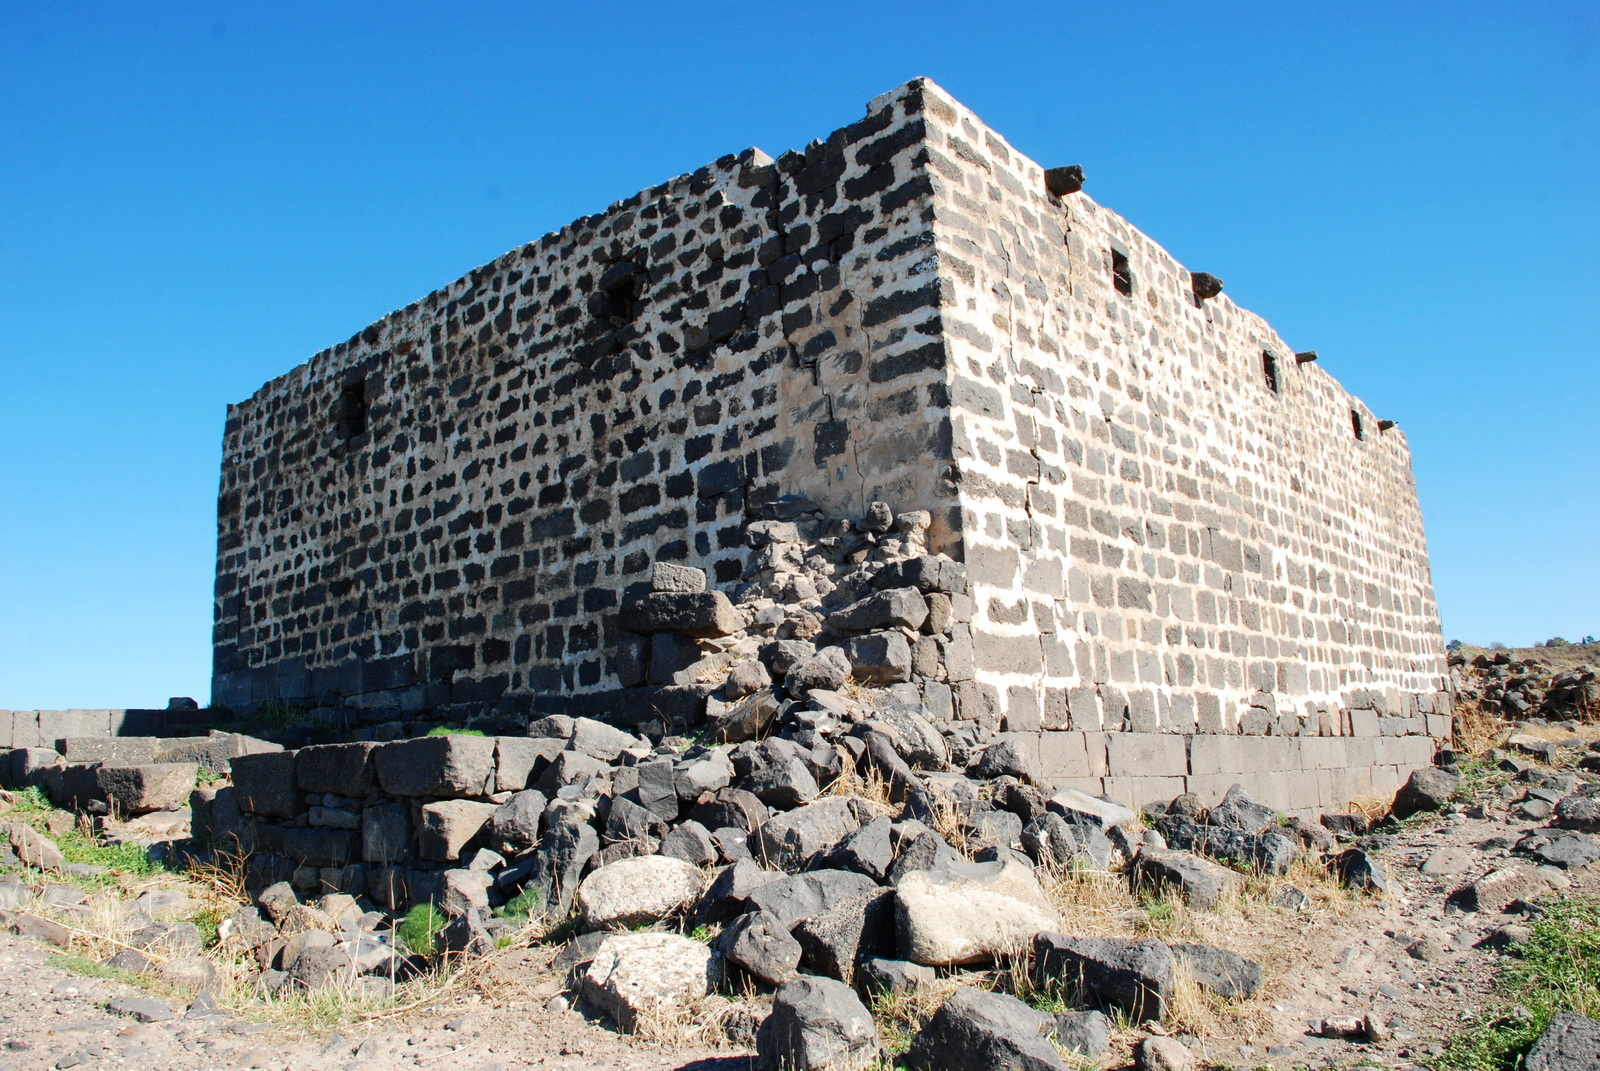 גולן - מבנה בית הכנסת כנף - נדבכי המבנה התחתונים הם שרידי ביהכ'נ